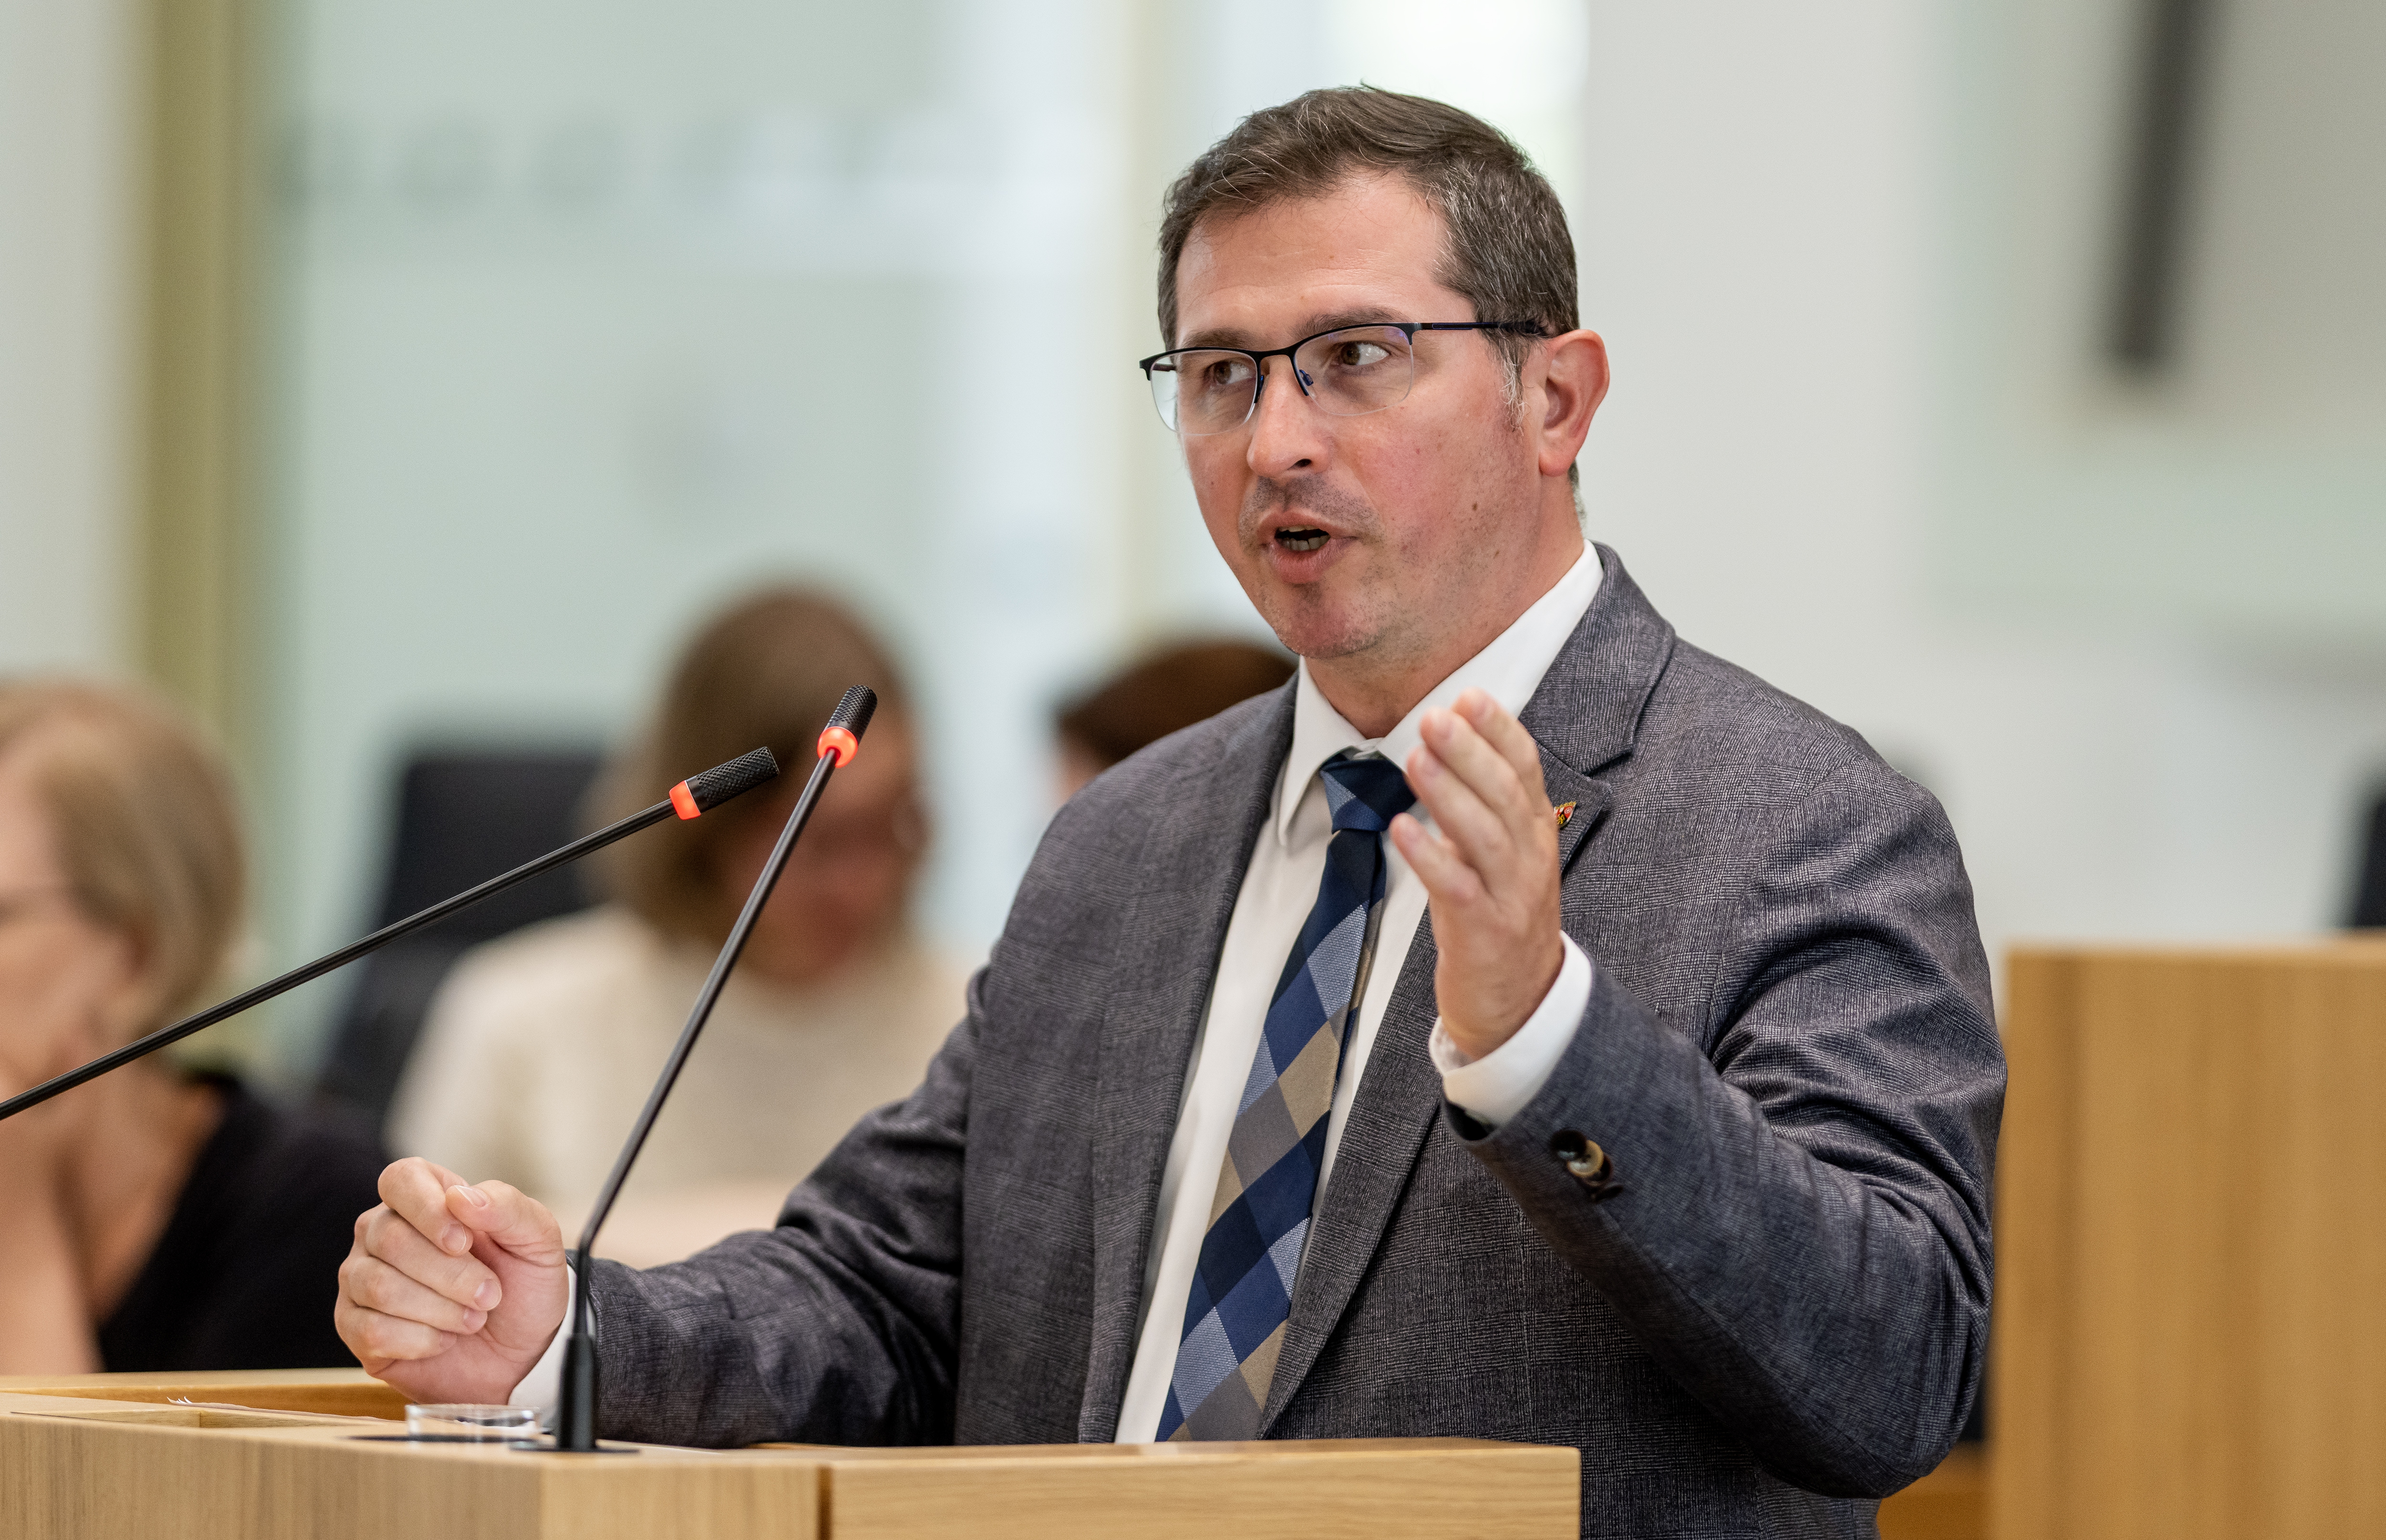 Patrick Kunz FREIE WÄHLER -Landtagsabgeordnete in Rheinland-Pfalz, aufgenommen während der Debatte am 22.06.2023